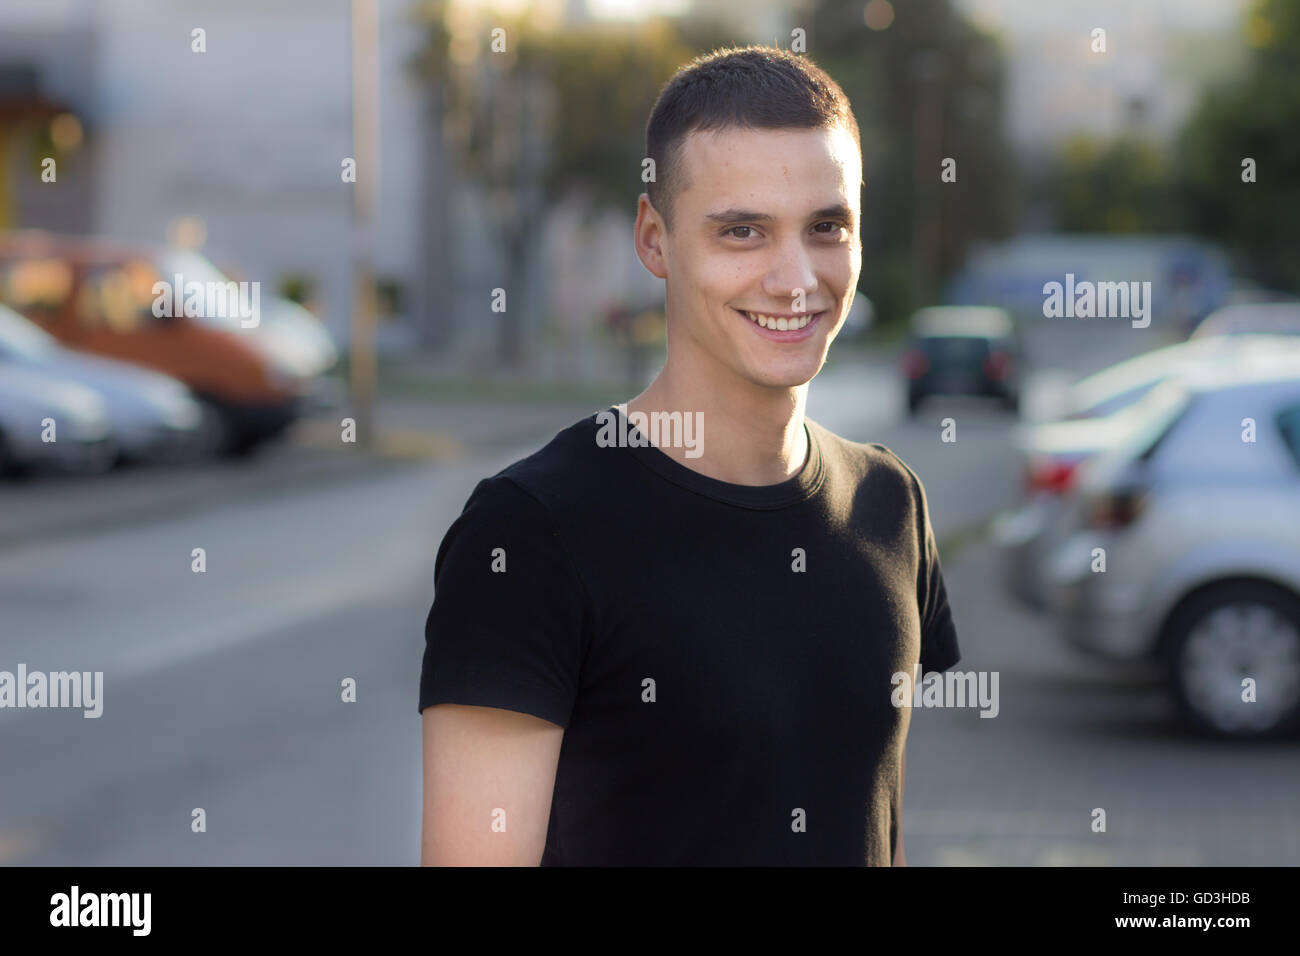 Junger Mann in den frühen 20er Jahren lächelnd Porträt im Freien. Flache Schärfentiefe, Od Fokus Hintergrund verwischen. Stockfoto